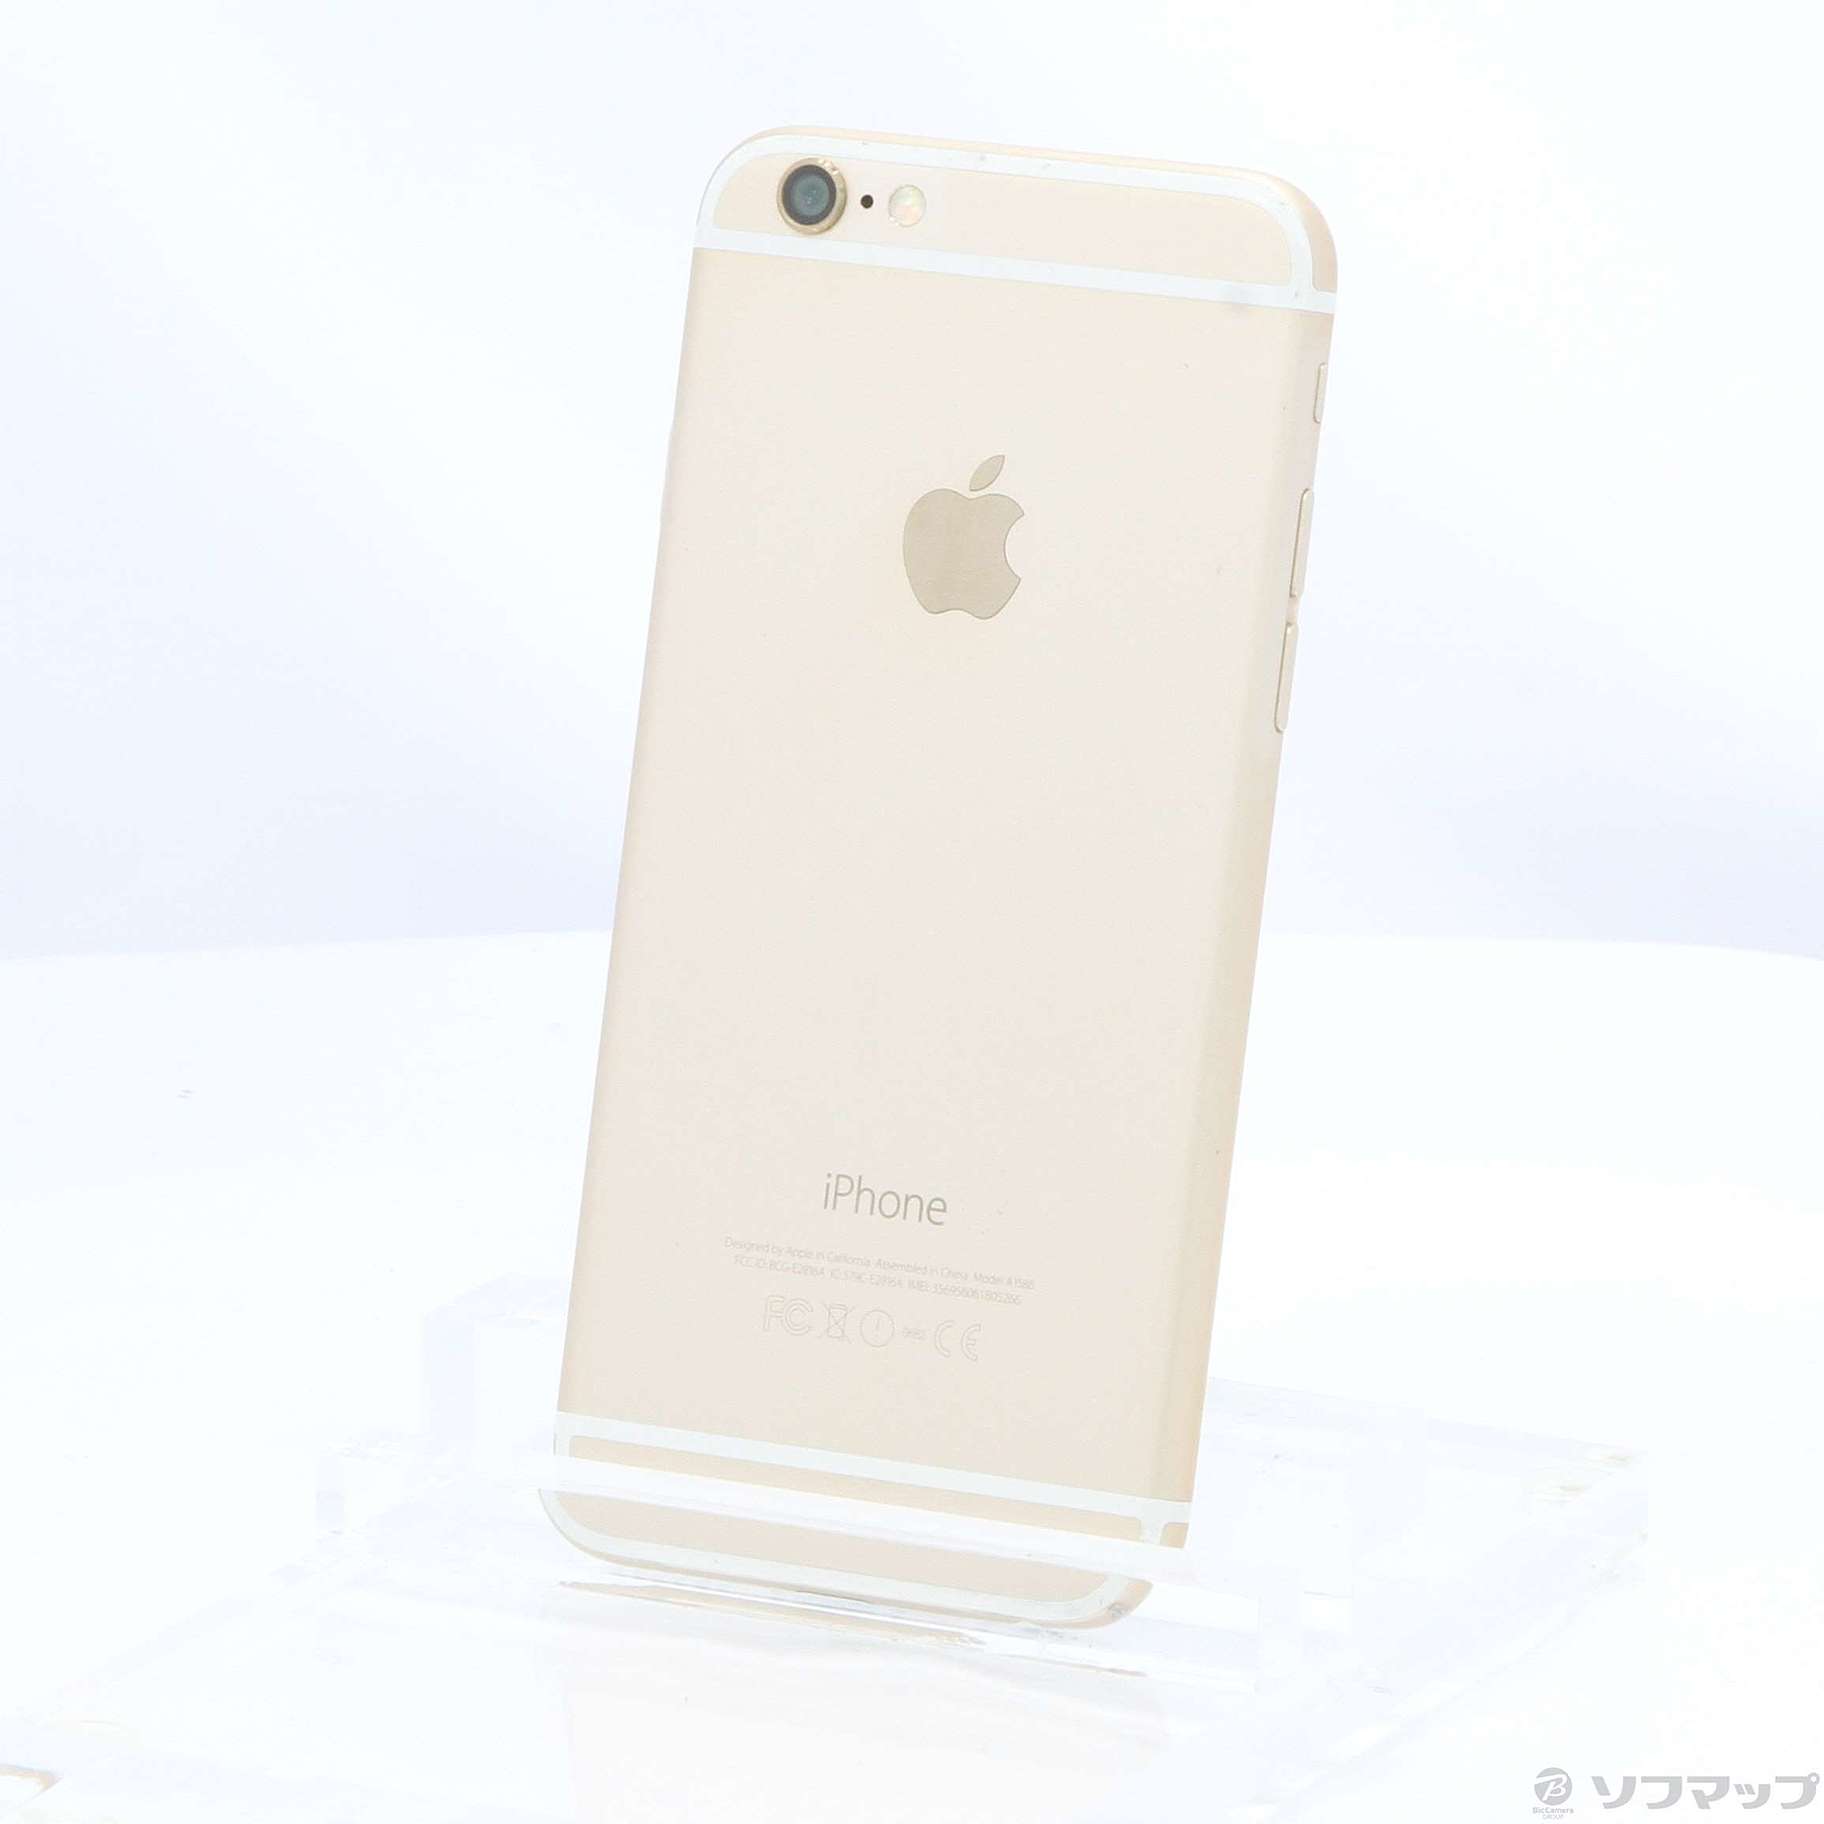 iPhone6 16GB ゴールド MG492J／A au